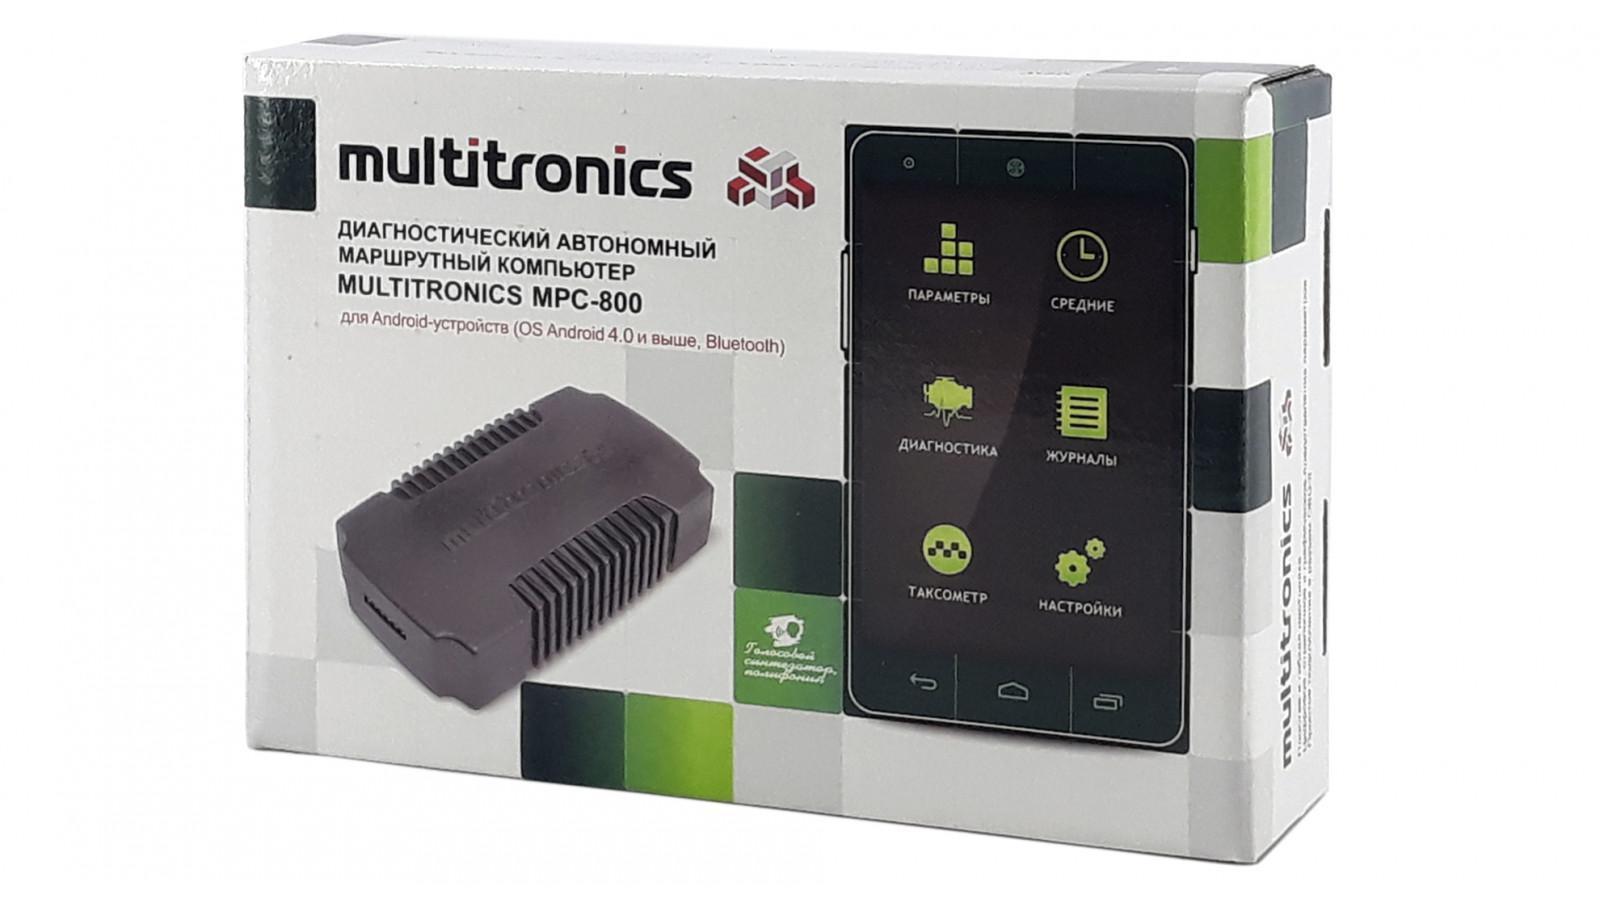 Multitronics mpc 800 բորտ համակարգիչ. մոդելի առավելություններ, հրահանգներ, վարորդների ակնարկներ